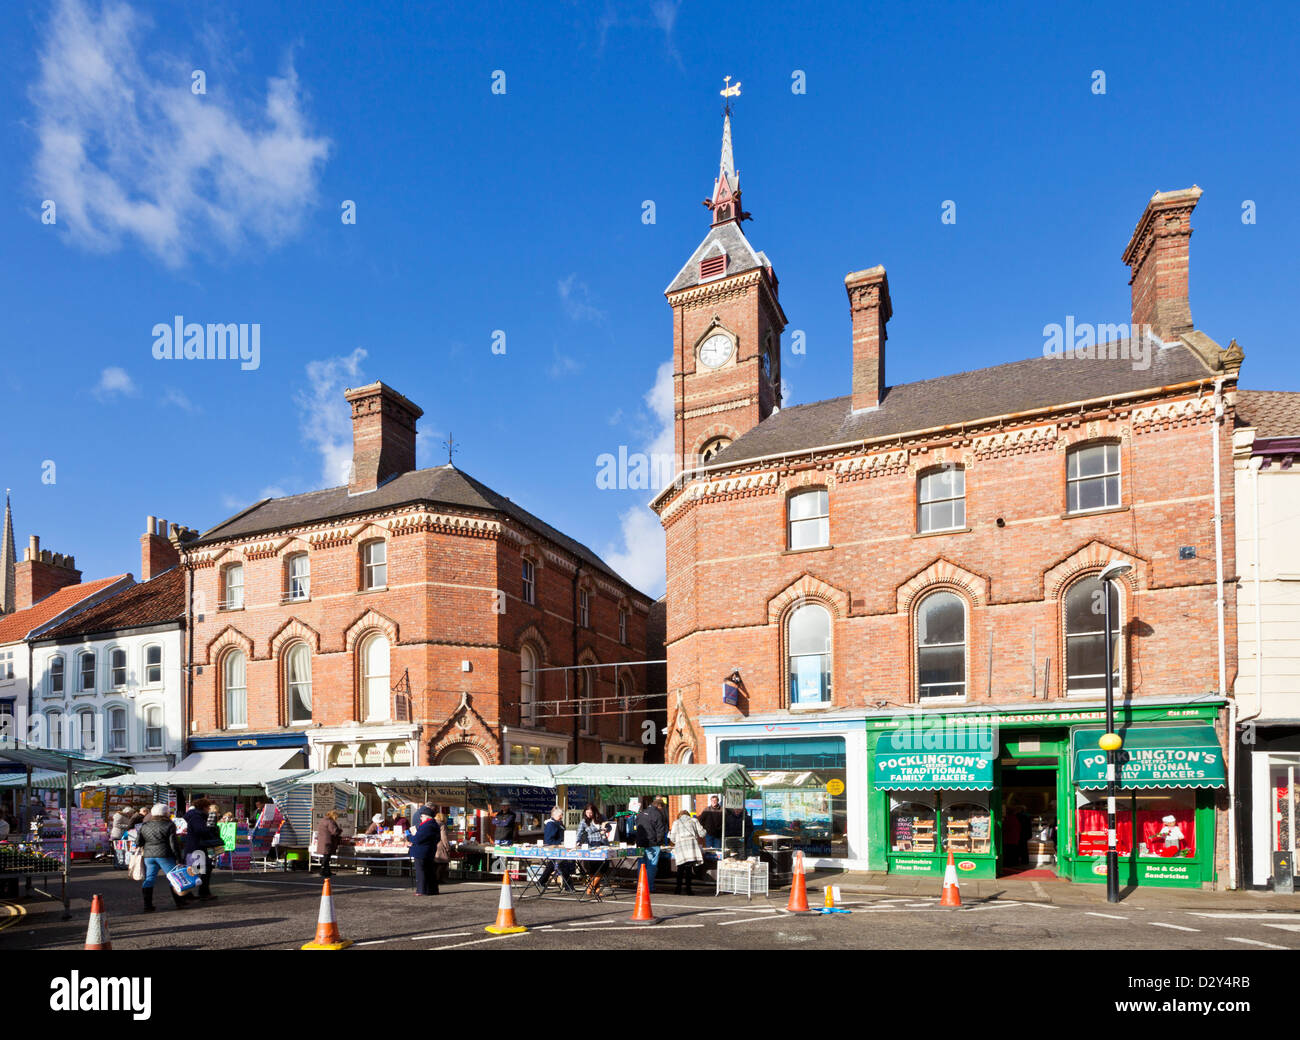 Markttag mit Obst und Gemüse Stände auf dem Marktplatz Louth Lincolnshire England UK GB EU Europa Stockfoto